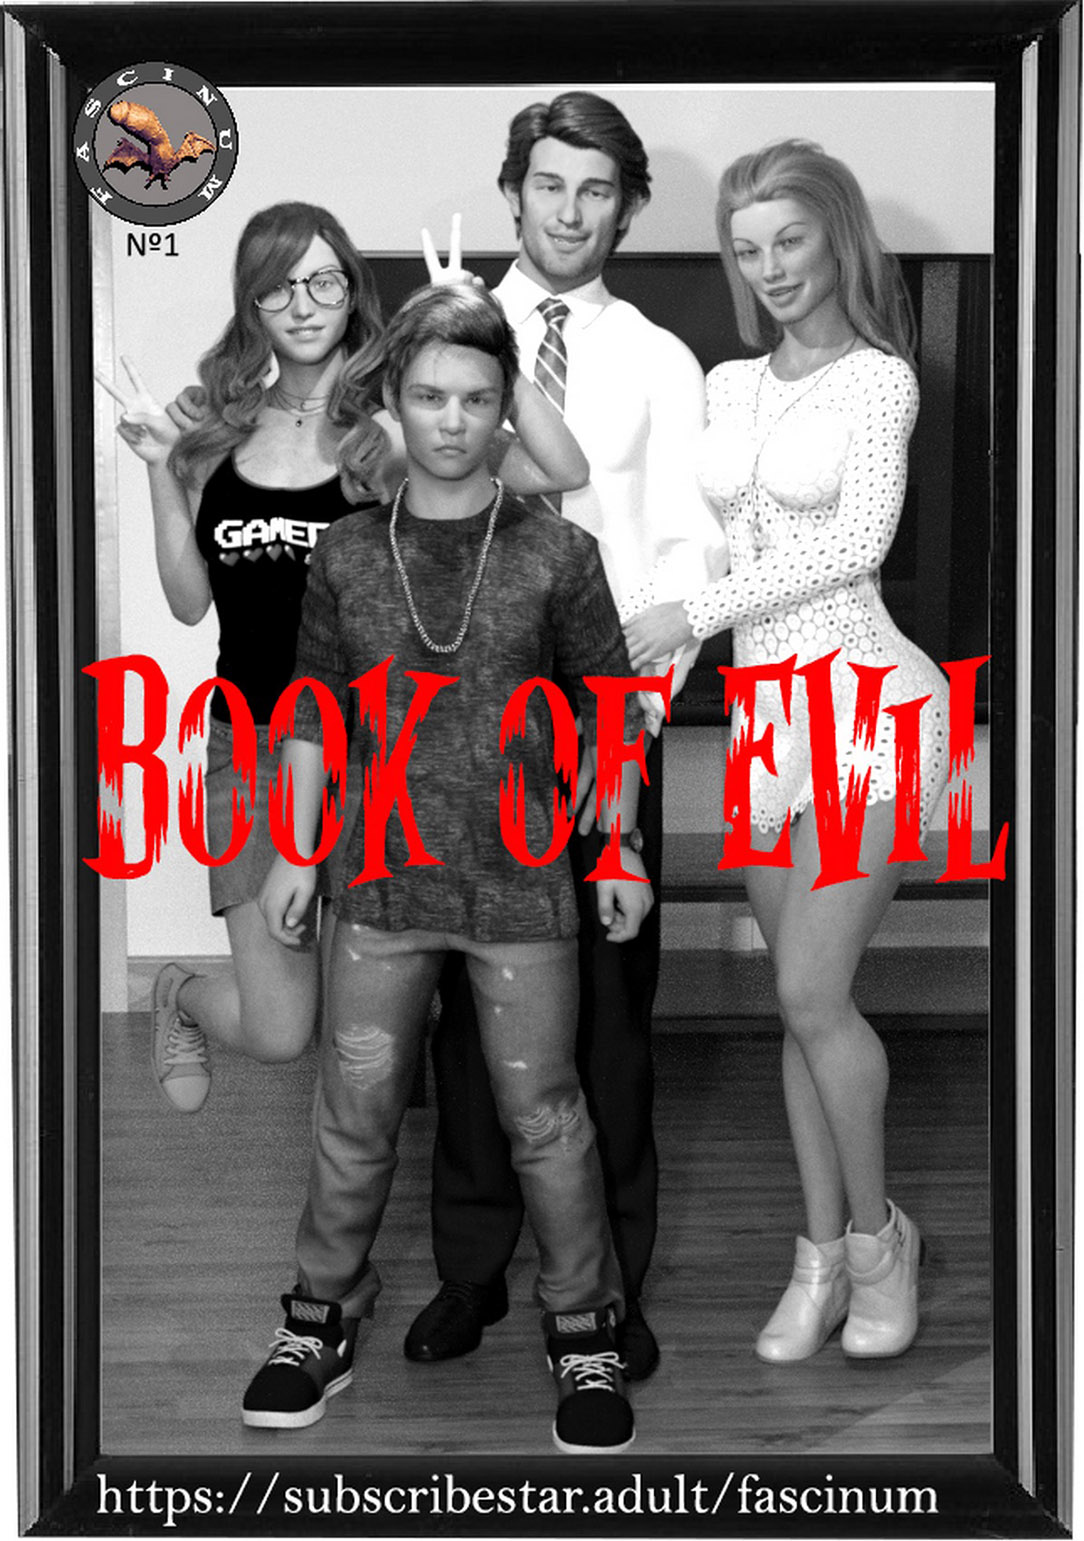 Book of Evil [Fascinum]